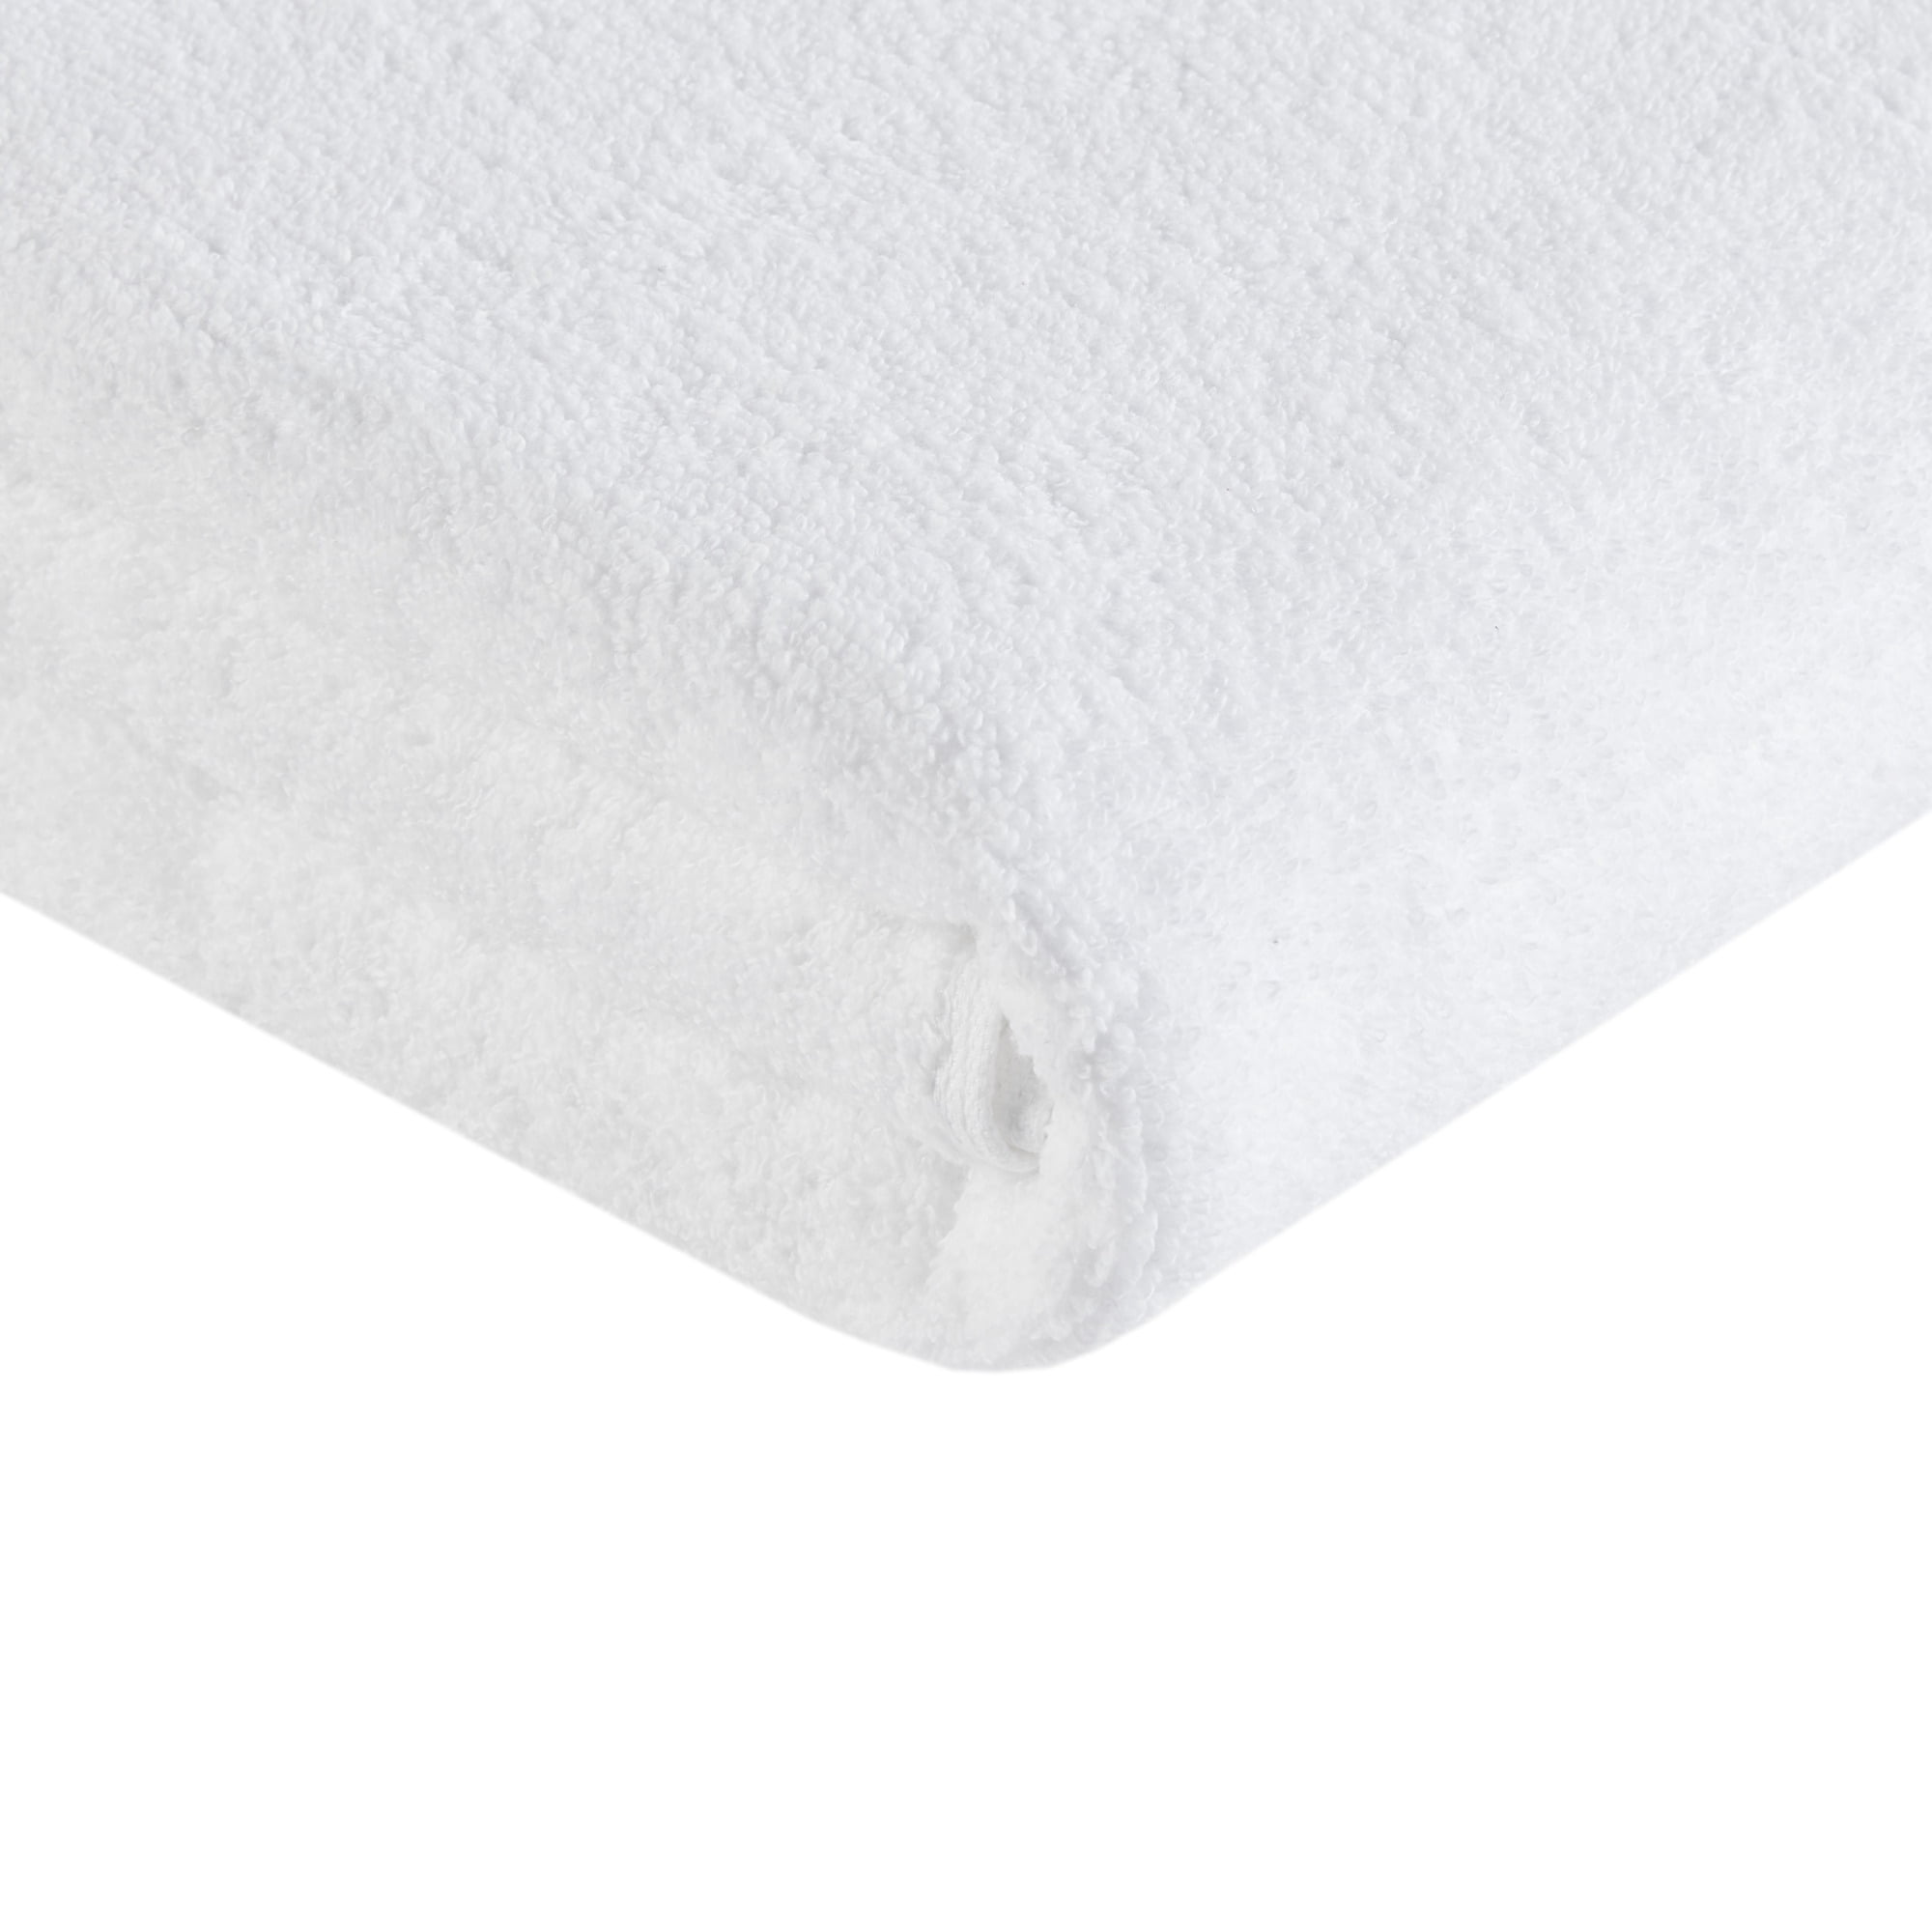 510 Design Big Bundle 100% Cotton 12 Piece Bath Towel Set, White